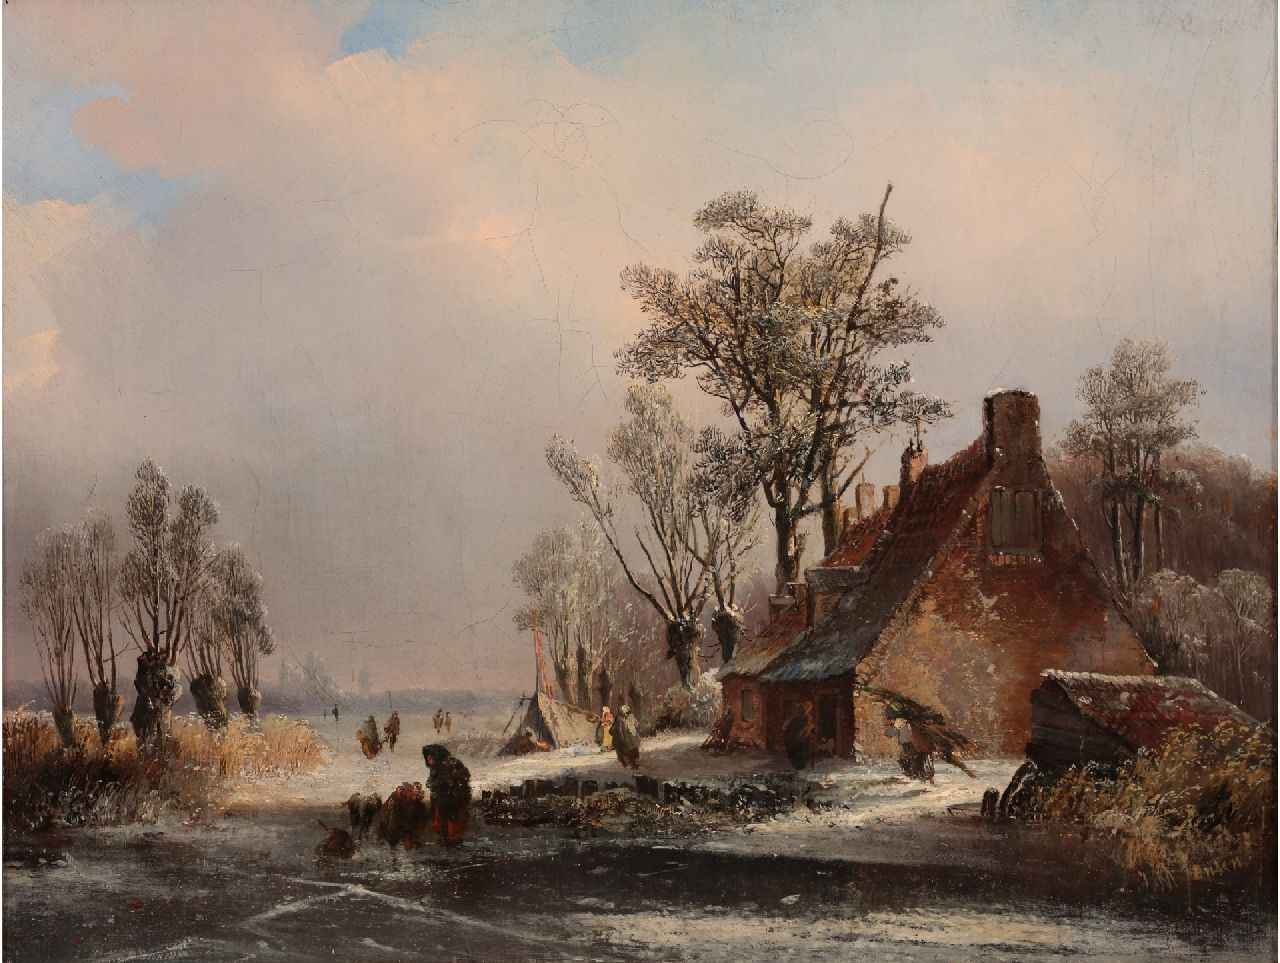 Jansen J.M.  | Johannes Mauritz Jansen | Schilderijen te koop aangeboden | Winterlandschap met boerderij en schaatsers, olieverf op doek 35,1 x 45,5 cm, gesigneerd rechtsonder